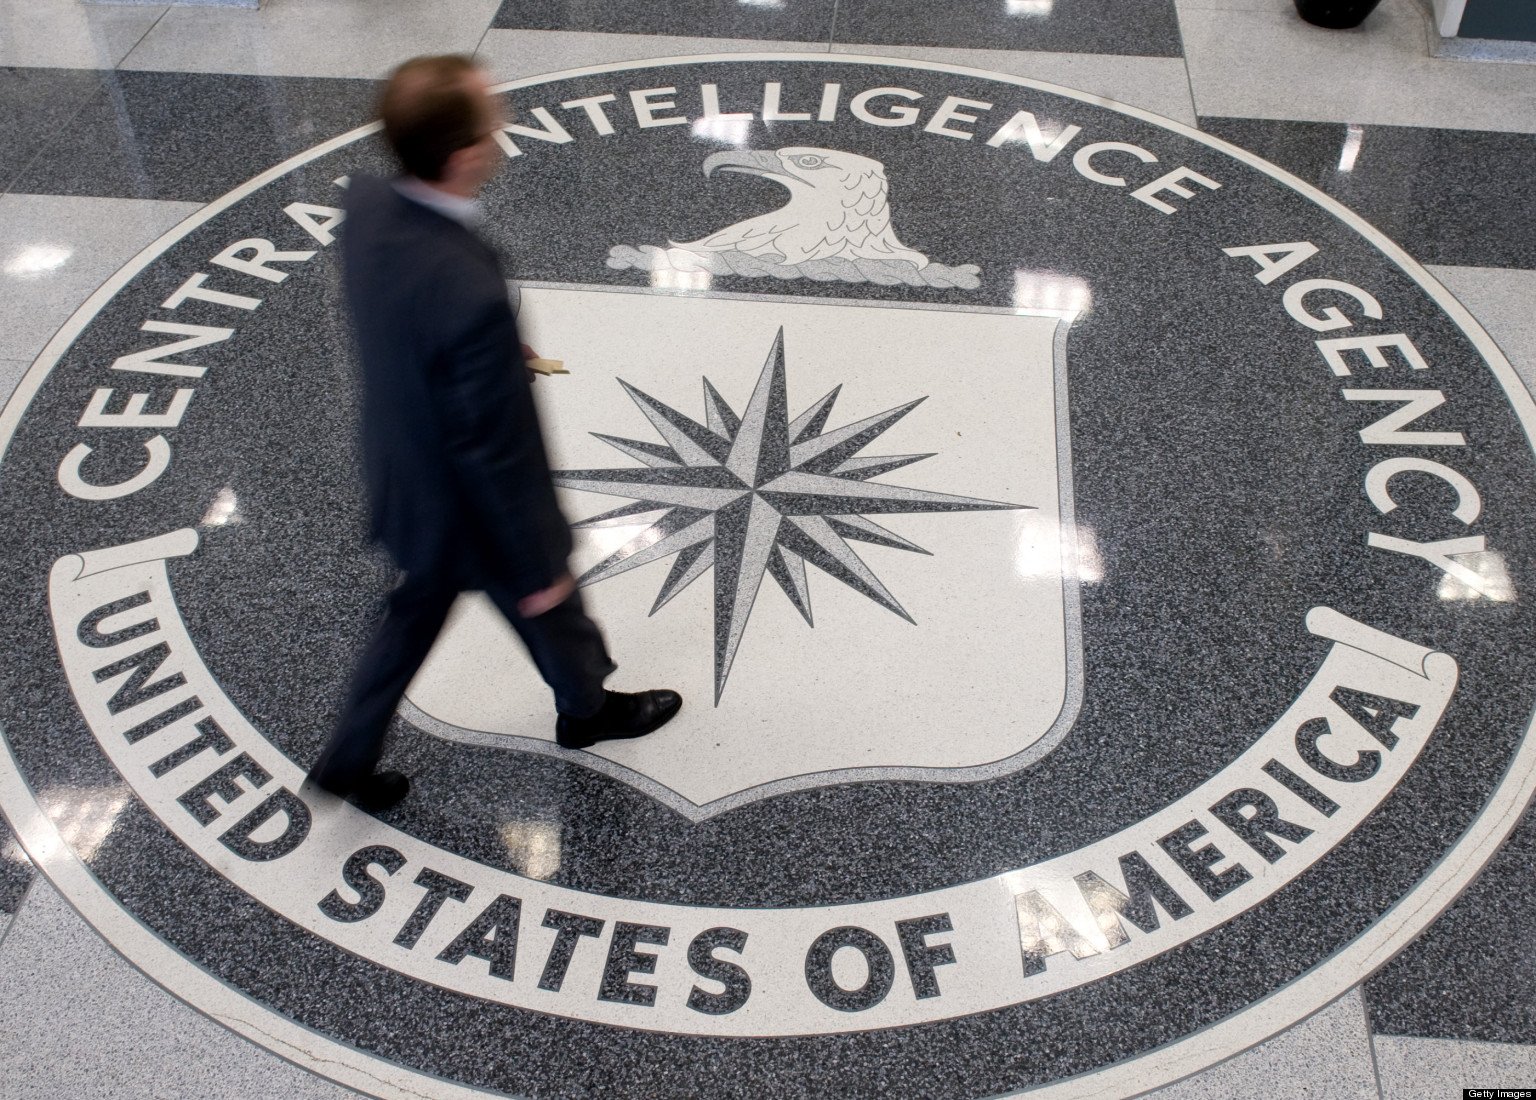 Σκληρά βασανιστήρια της CIA κατά την ανάκριση υπόπτων για τρομοκρατία